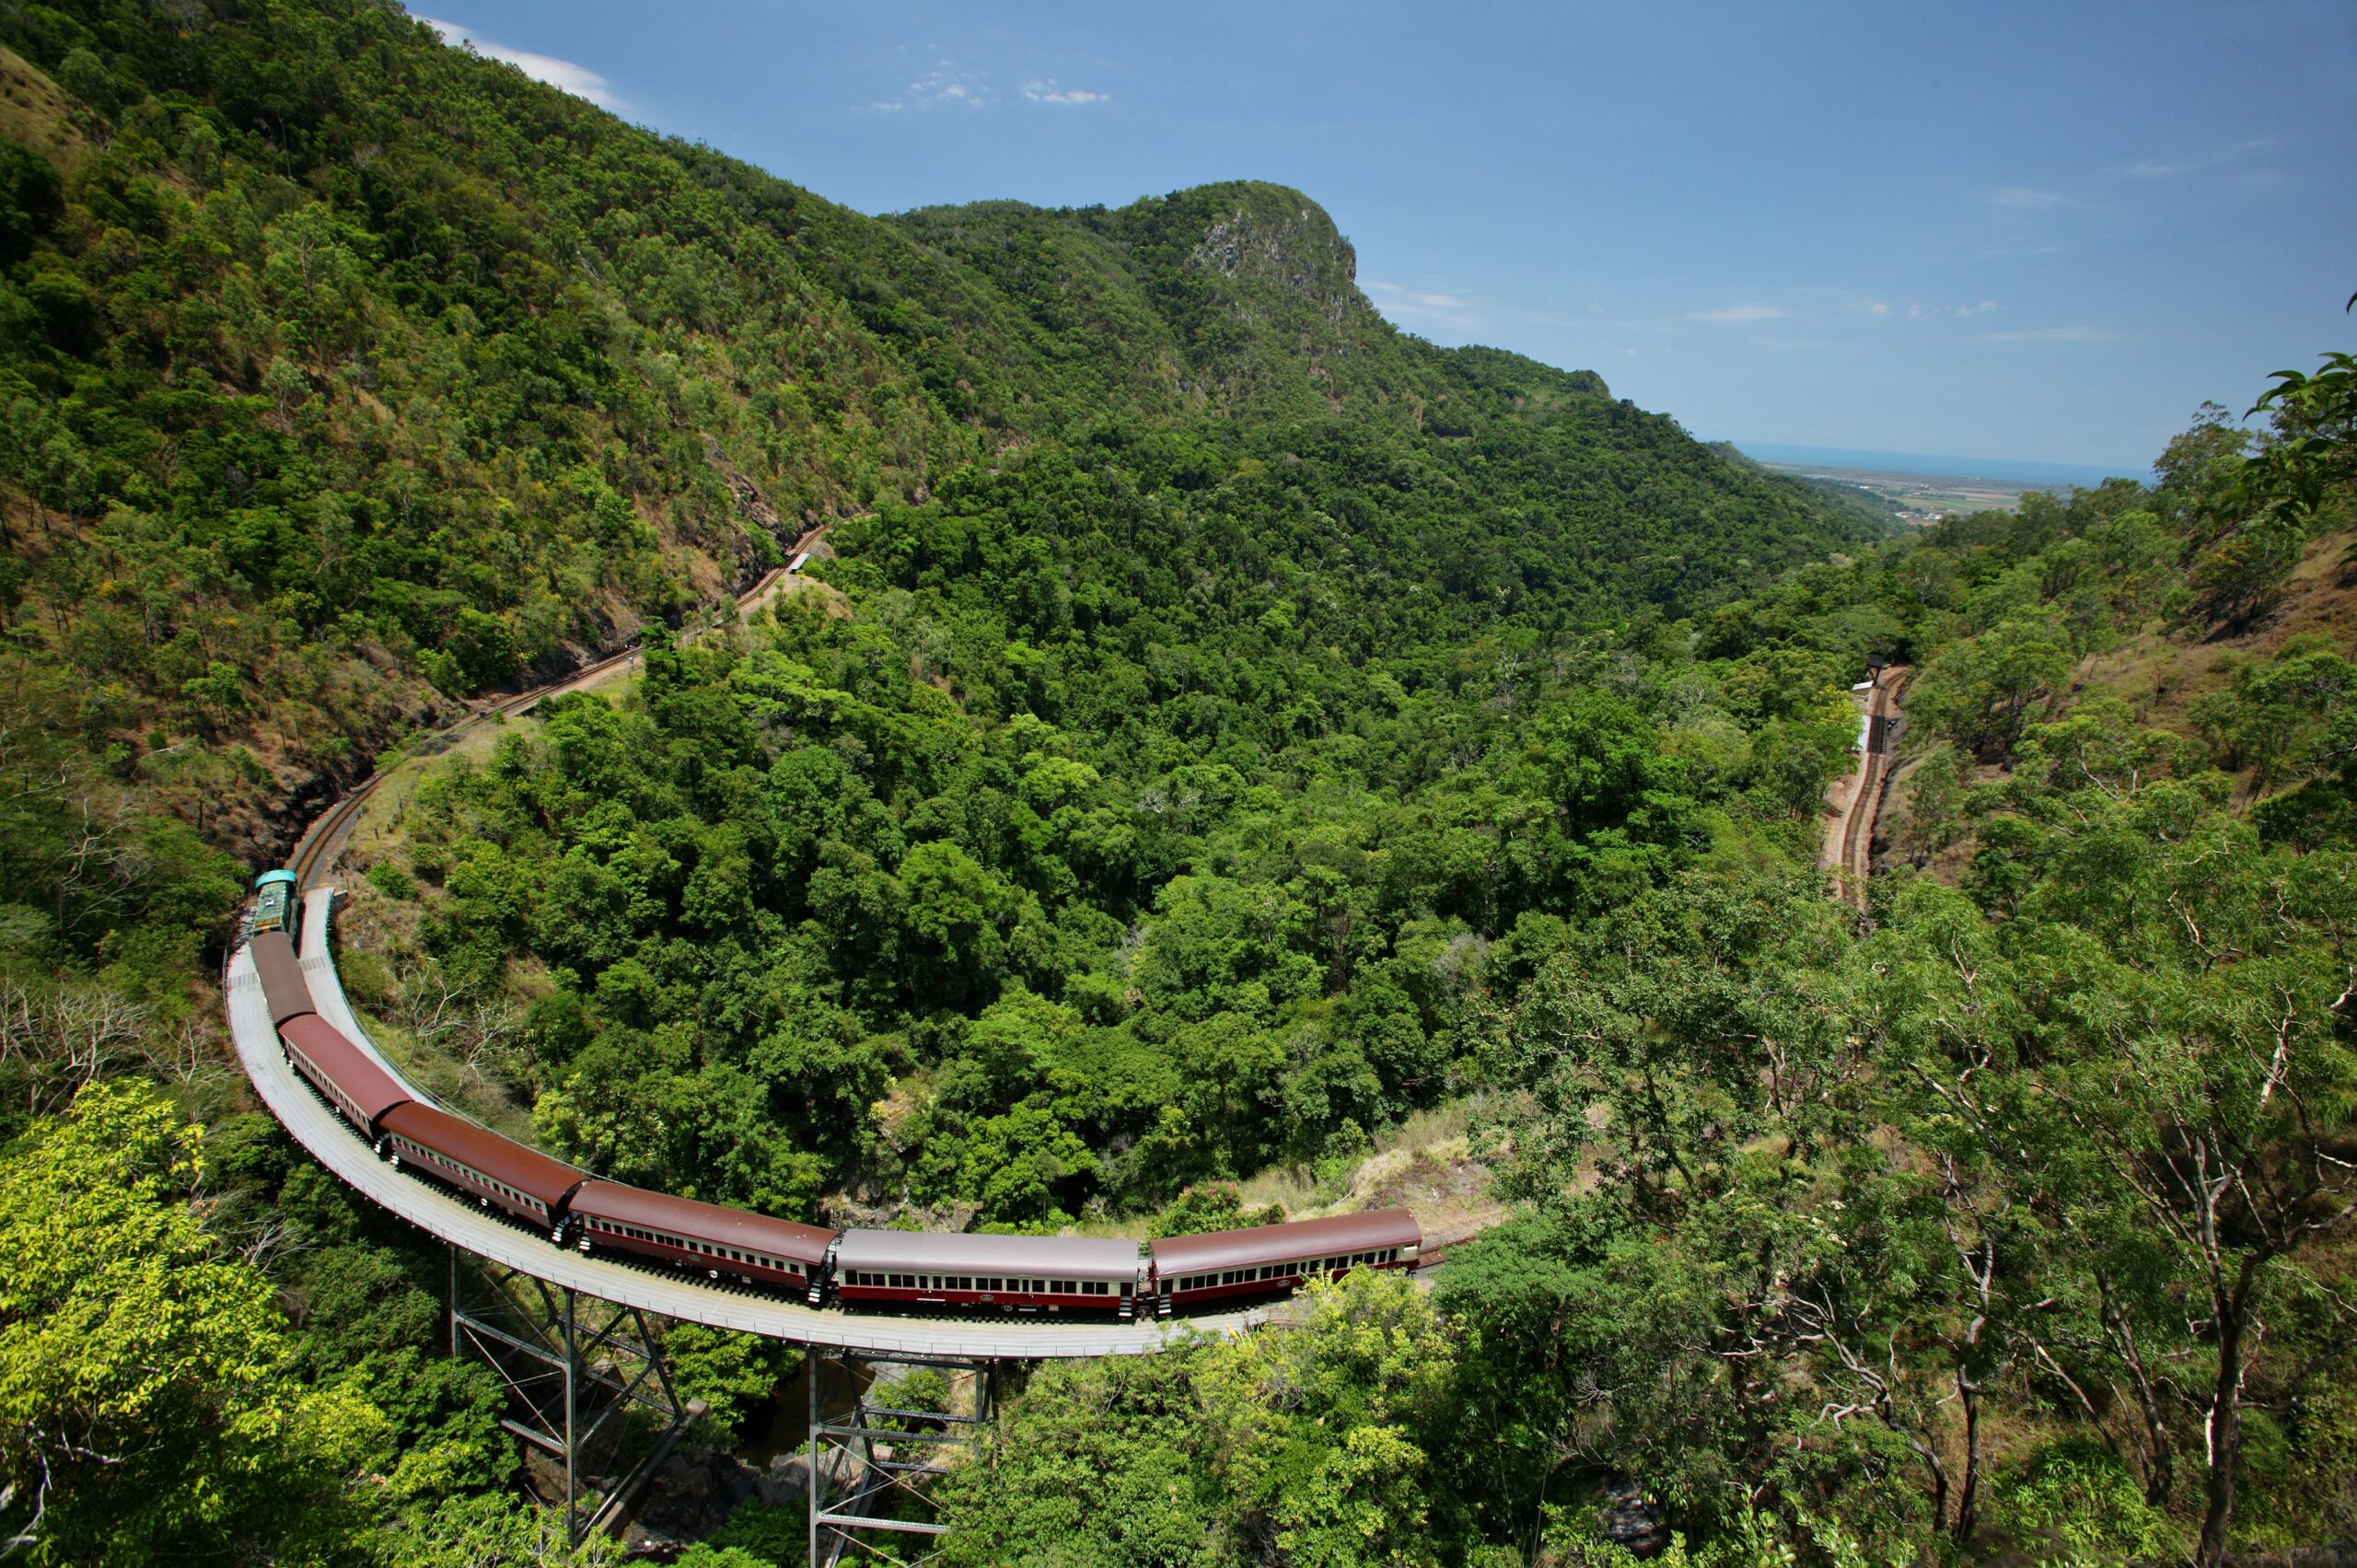 Kuranda: Skyrail and Scenic Rail S-0945 Q-1400 XN